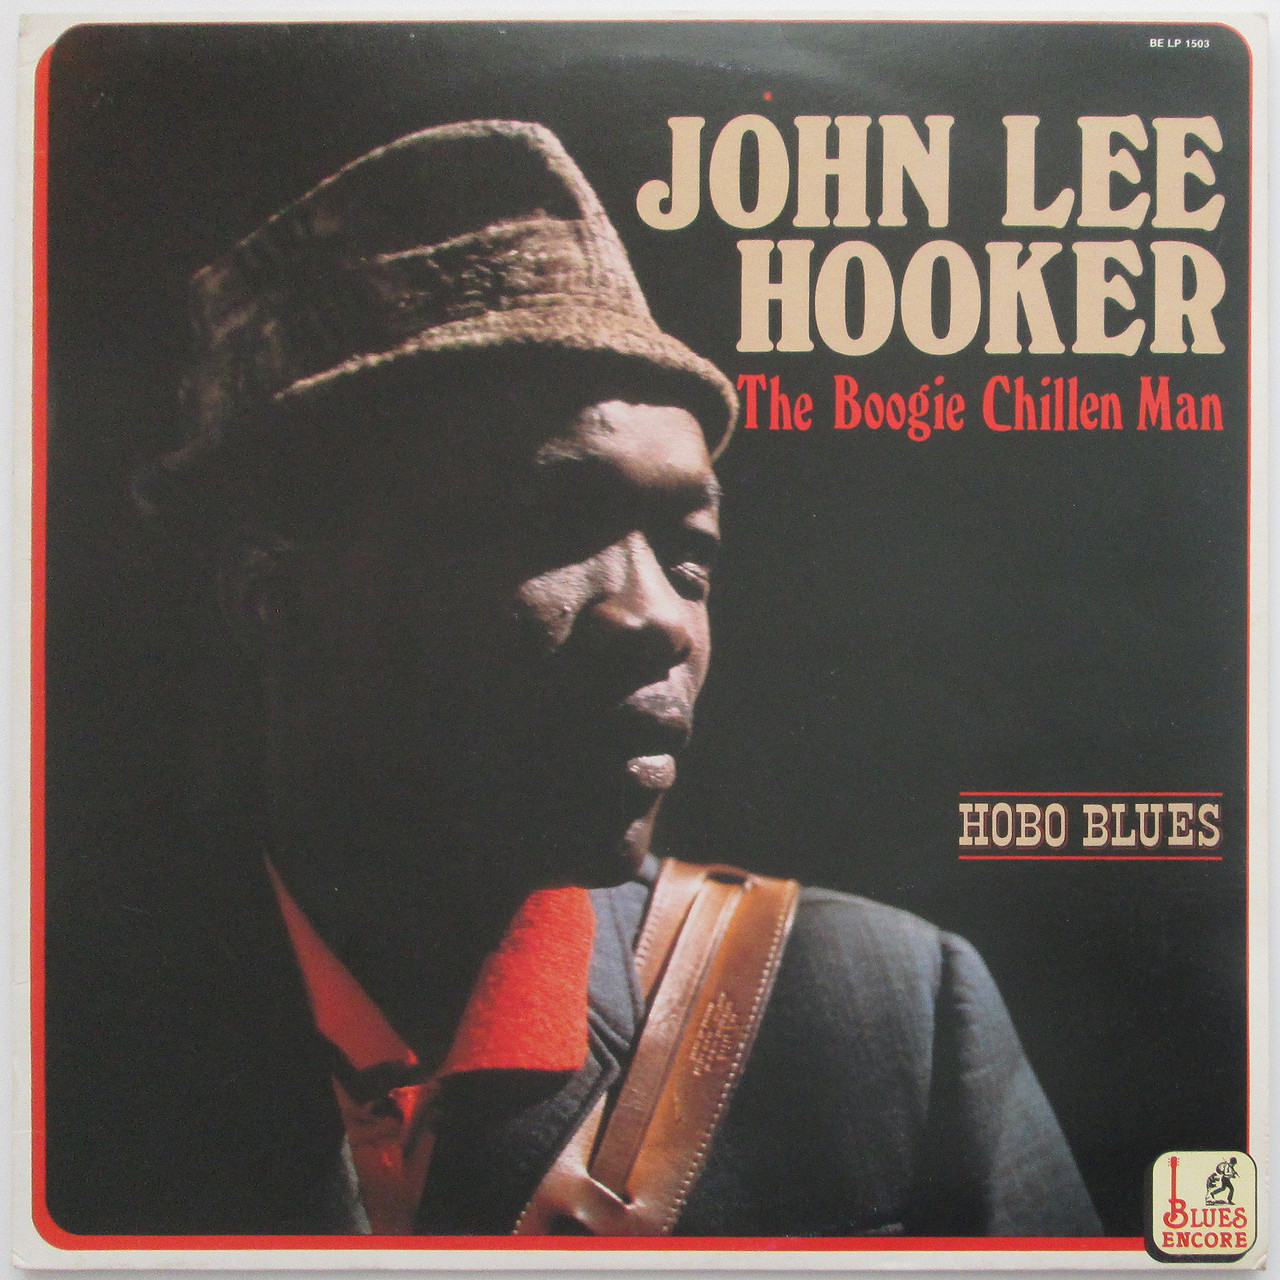 John Lee Hooker – The Boogie Chillen Man